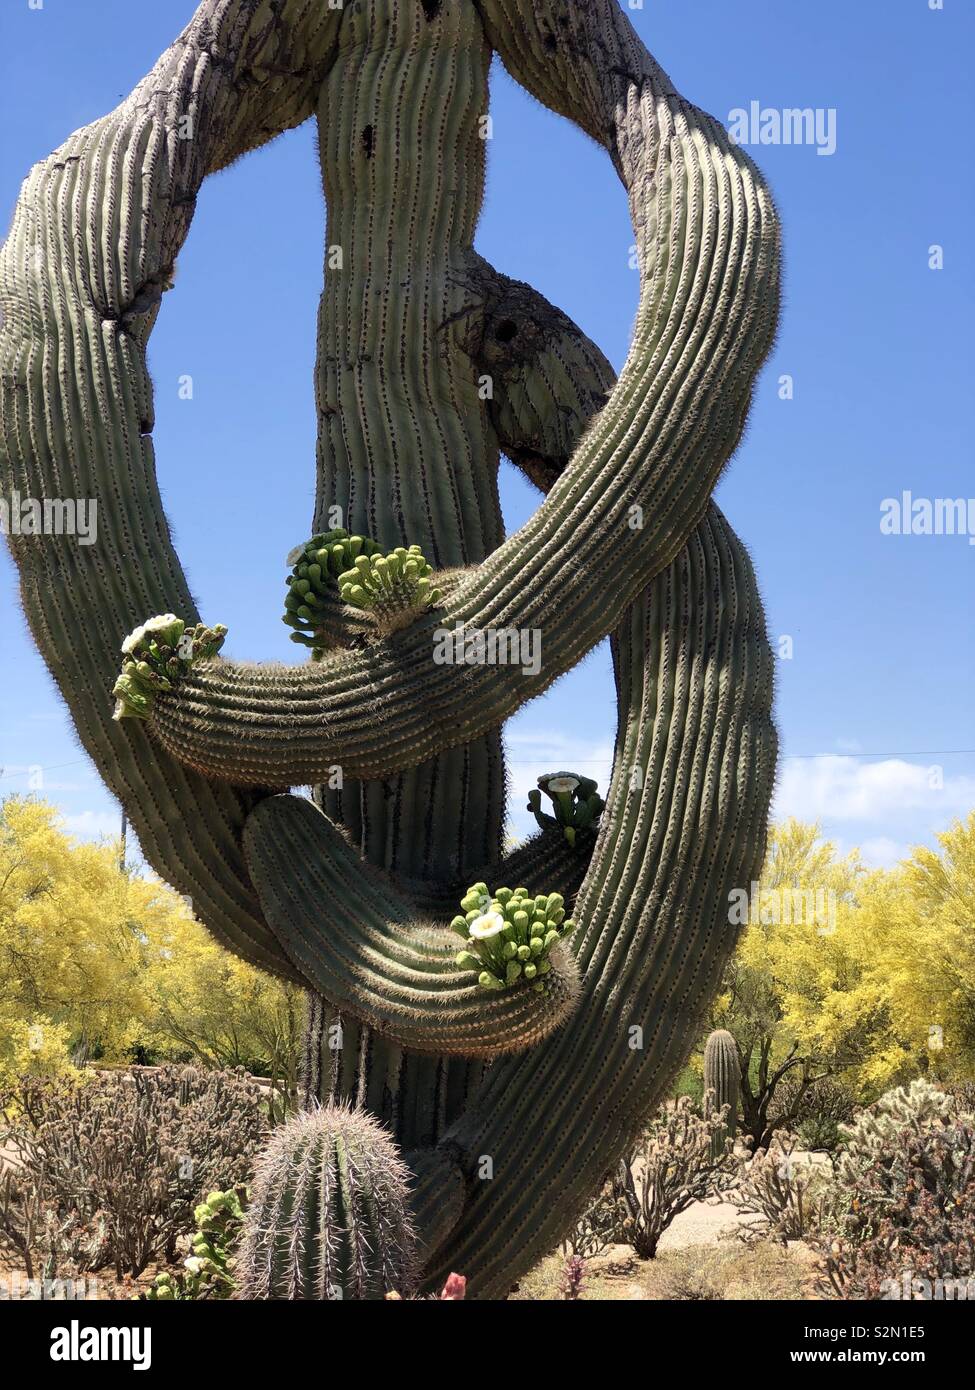 La Mujer Rubia Le Da Un Abrazo A Un Cactus Saguaro Foto de stock y